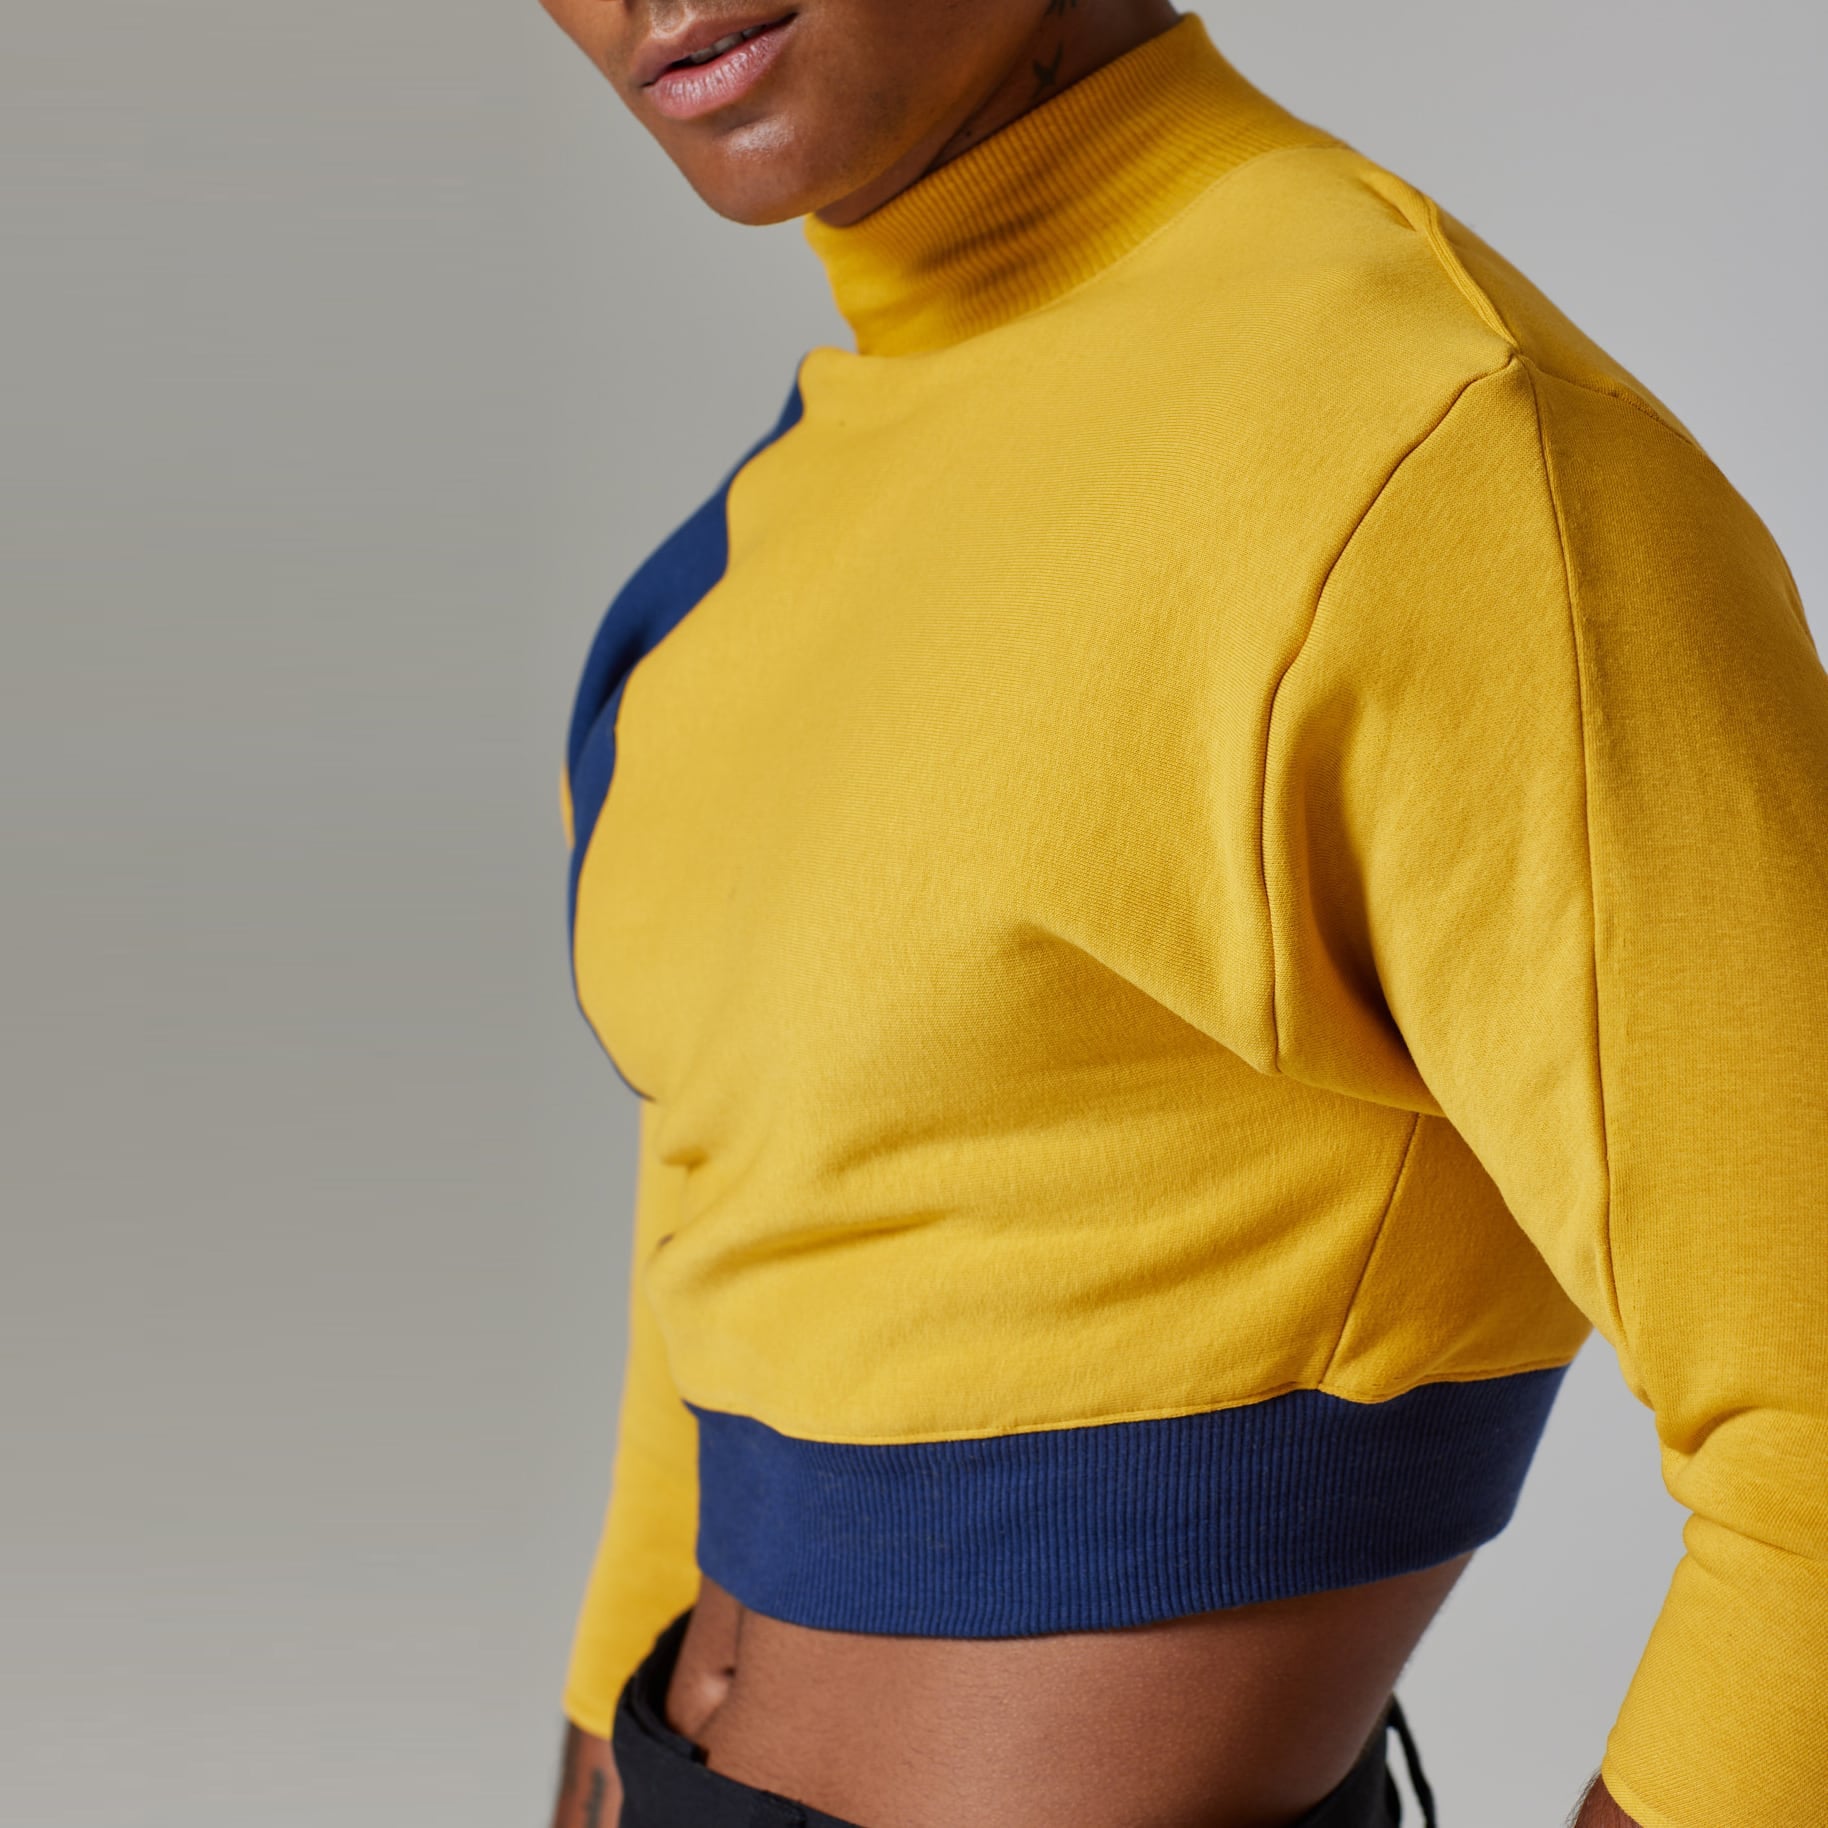 ZERØ London - Side view, mens luxury cropped jersey jumper in mustard, zero waste fashion, designed & made in London